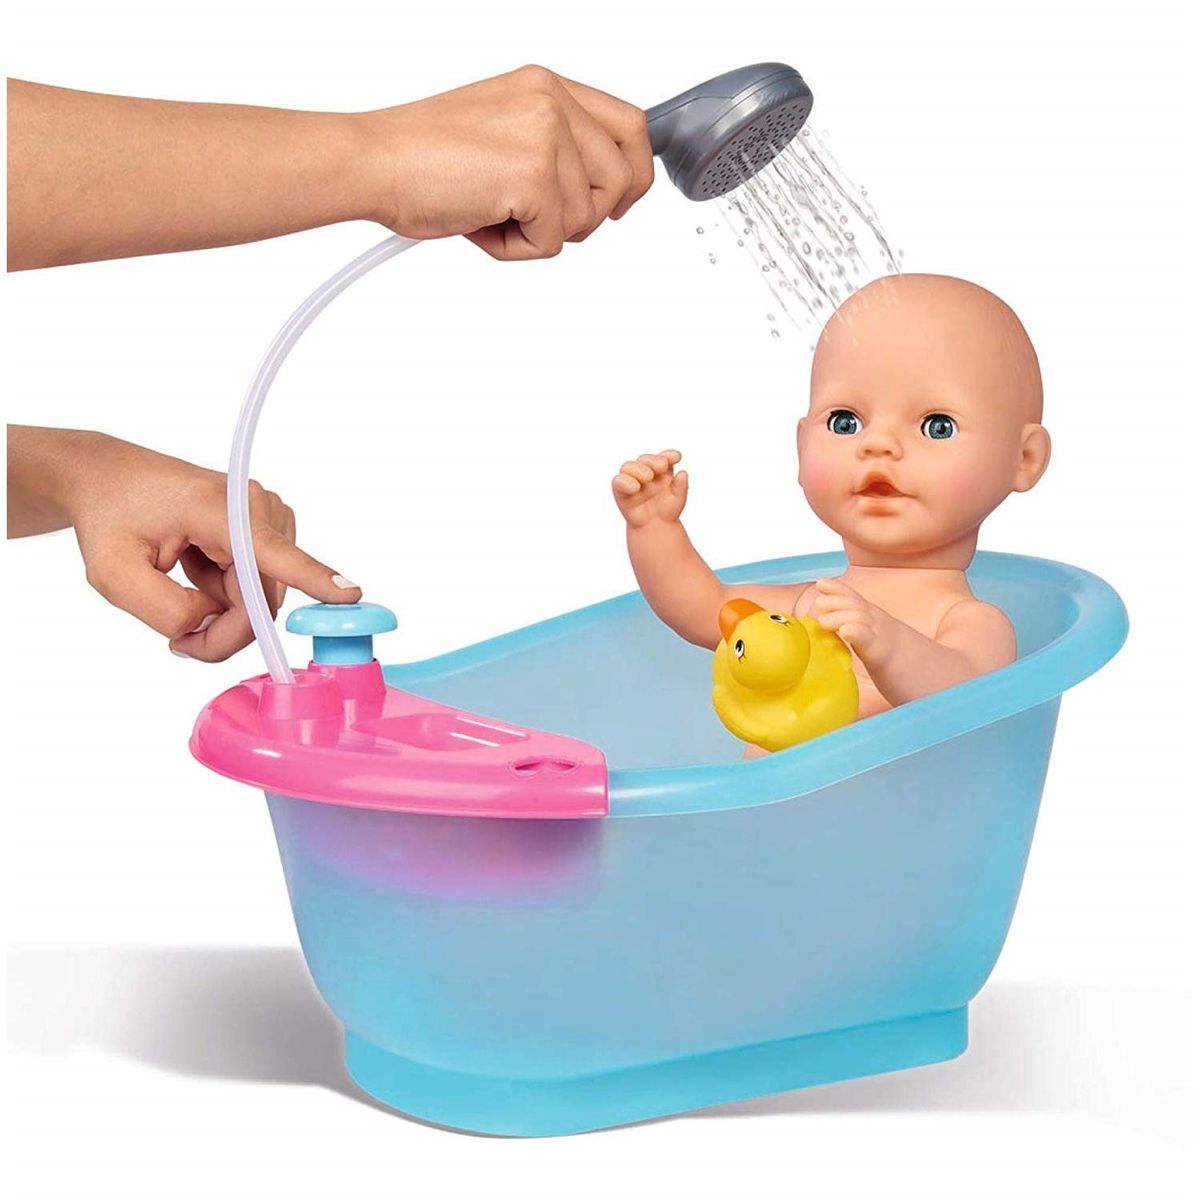 New born baignoire bébé poupée baignoire multicolore Simba Toys